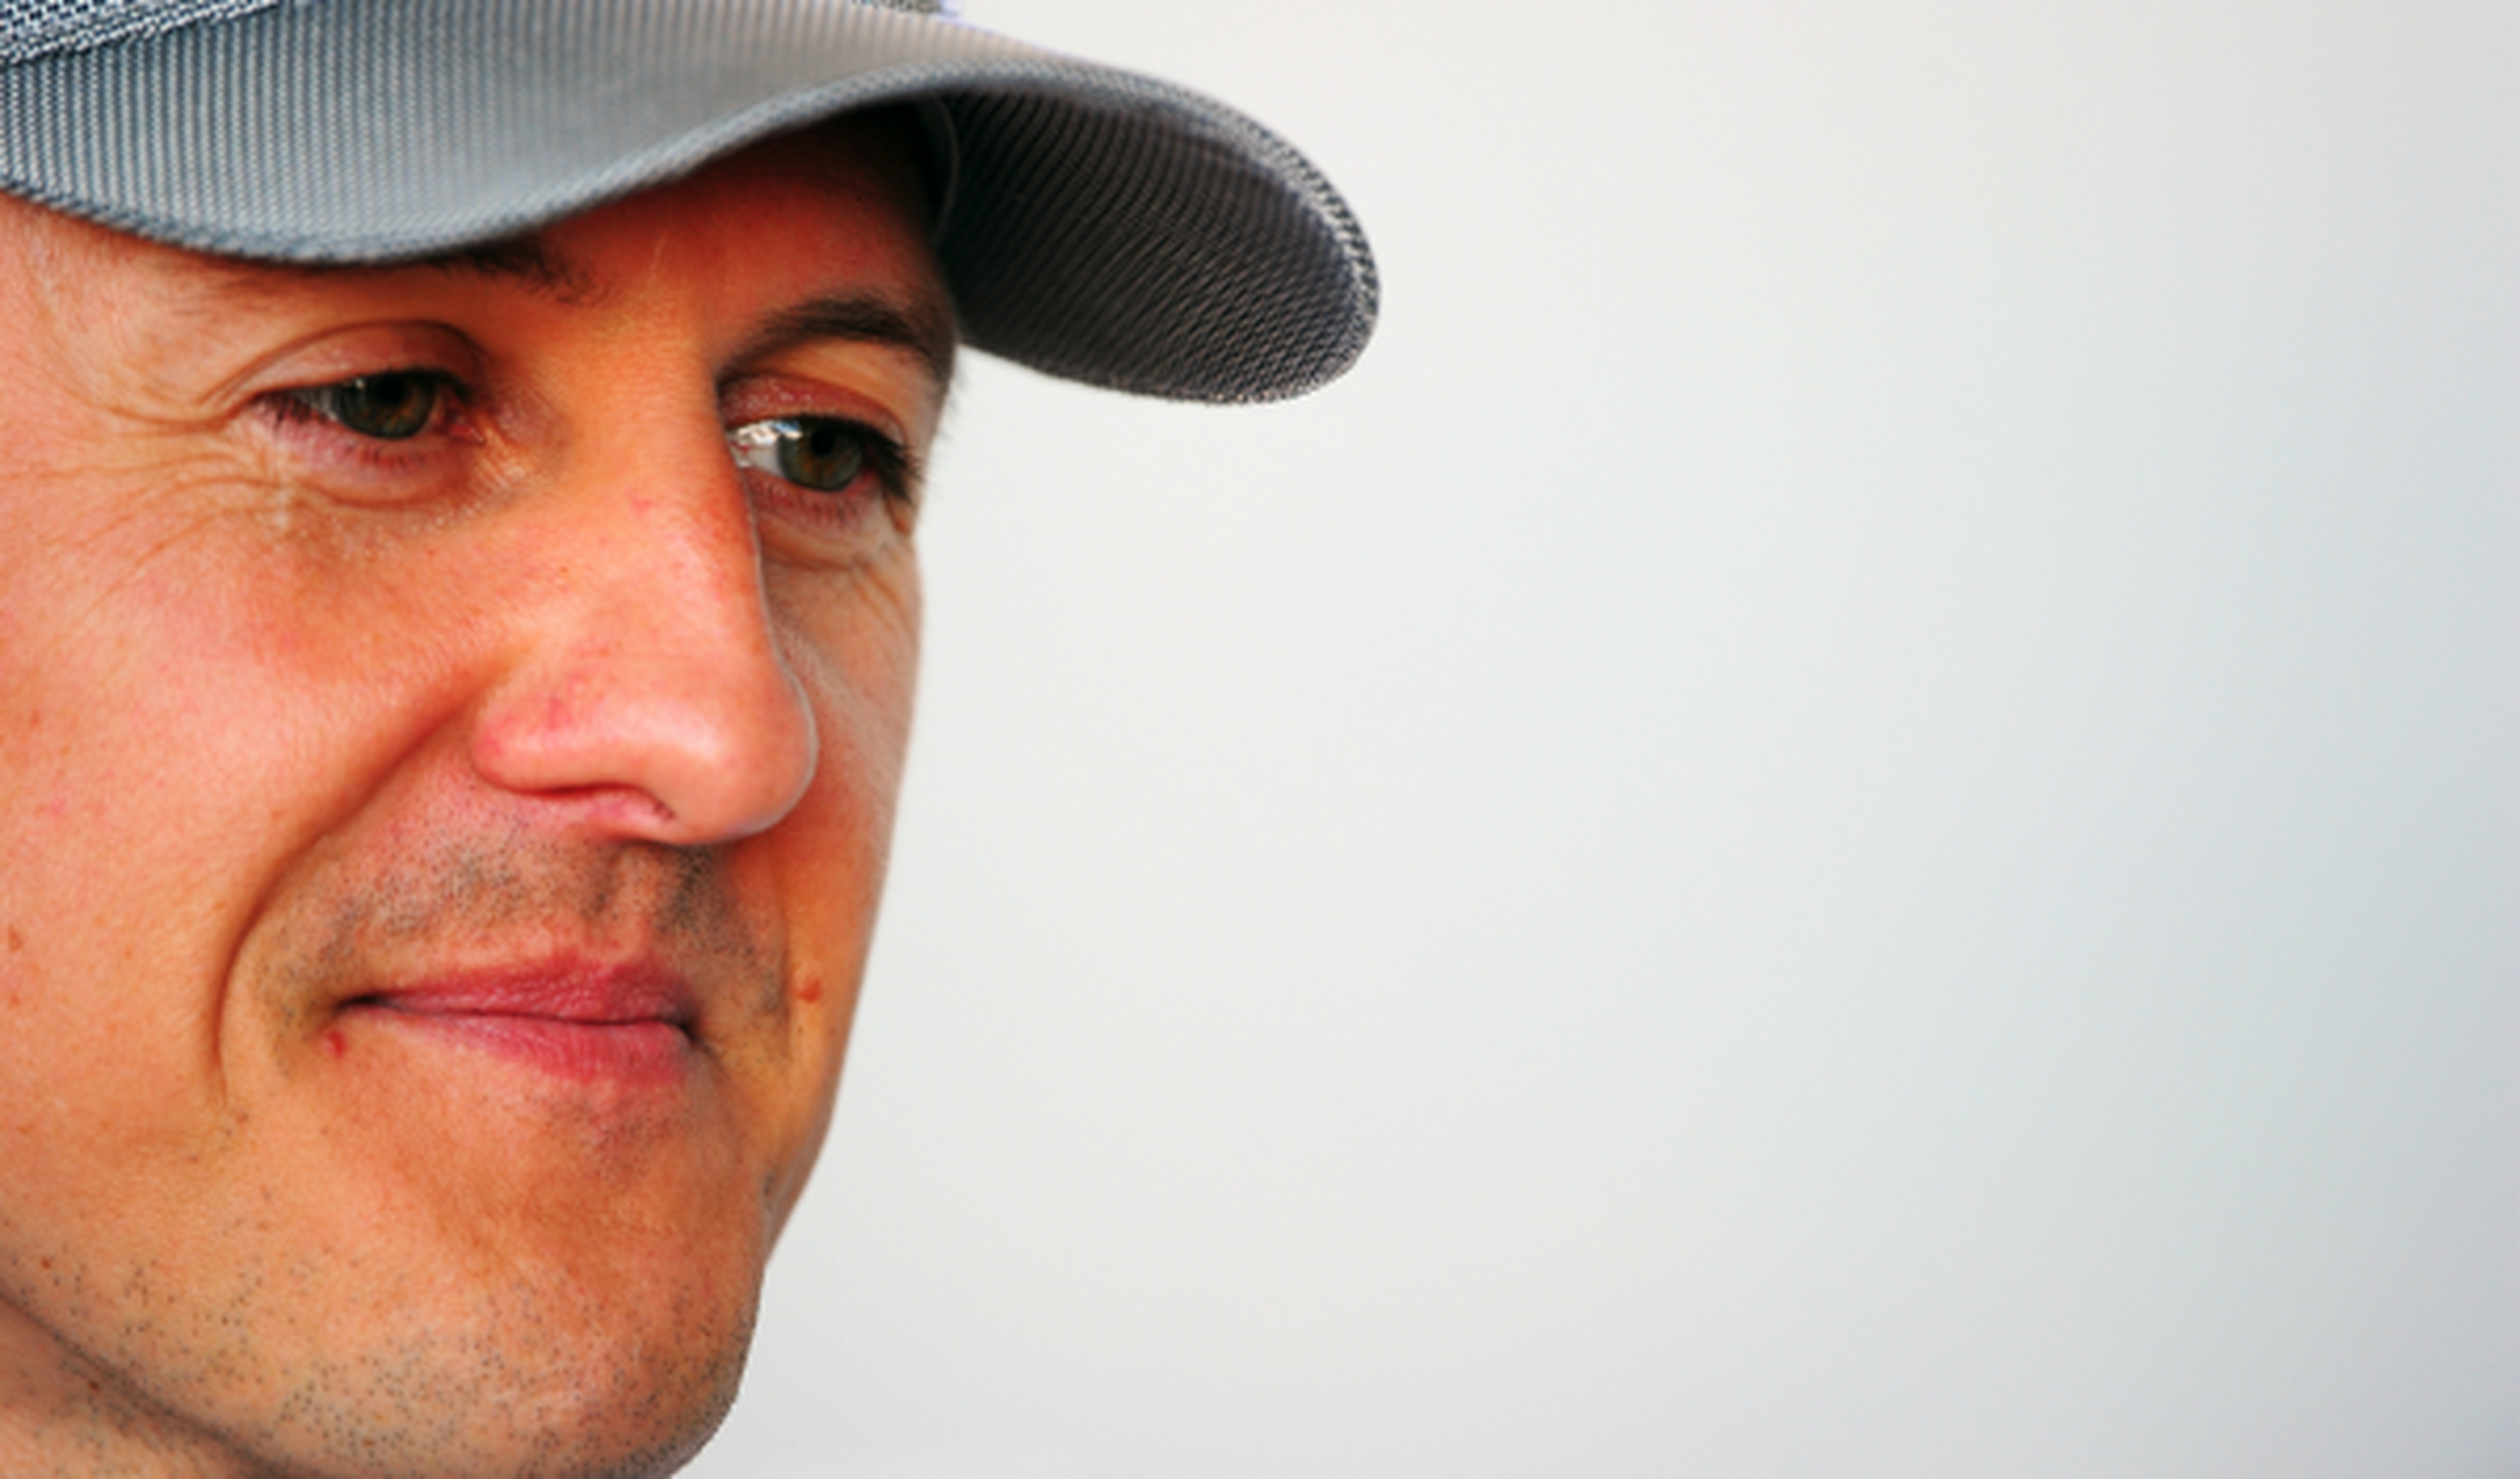 Michael Schumacher avanza "lentamente", según su esposa